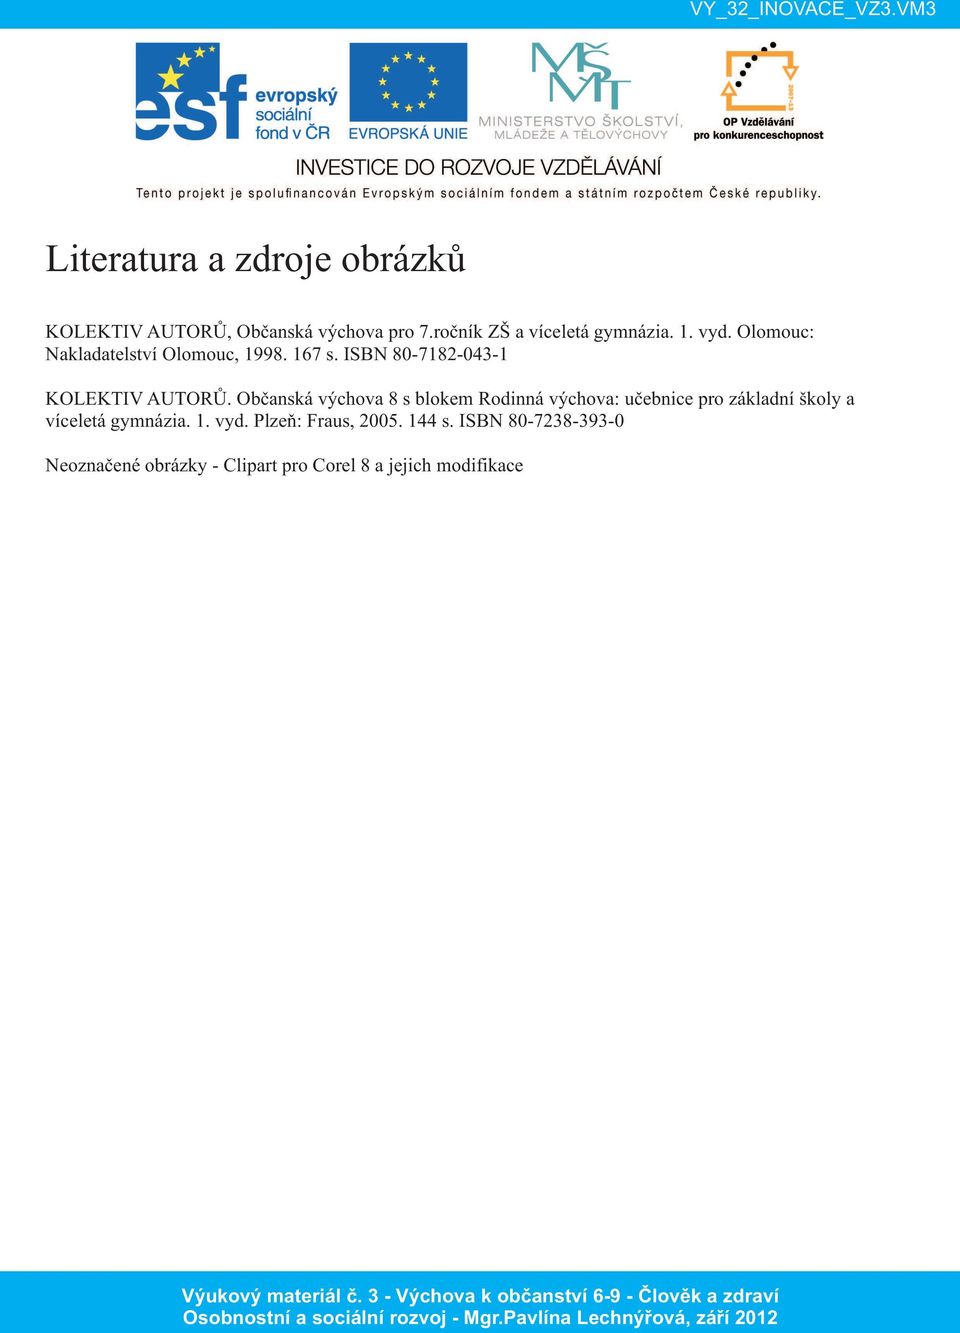 Občanská výchova 8 s blokem Rodinná výchova: učebnice pro základní školy a víceletá gymnázia. 1.